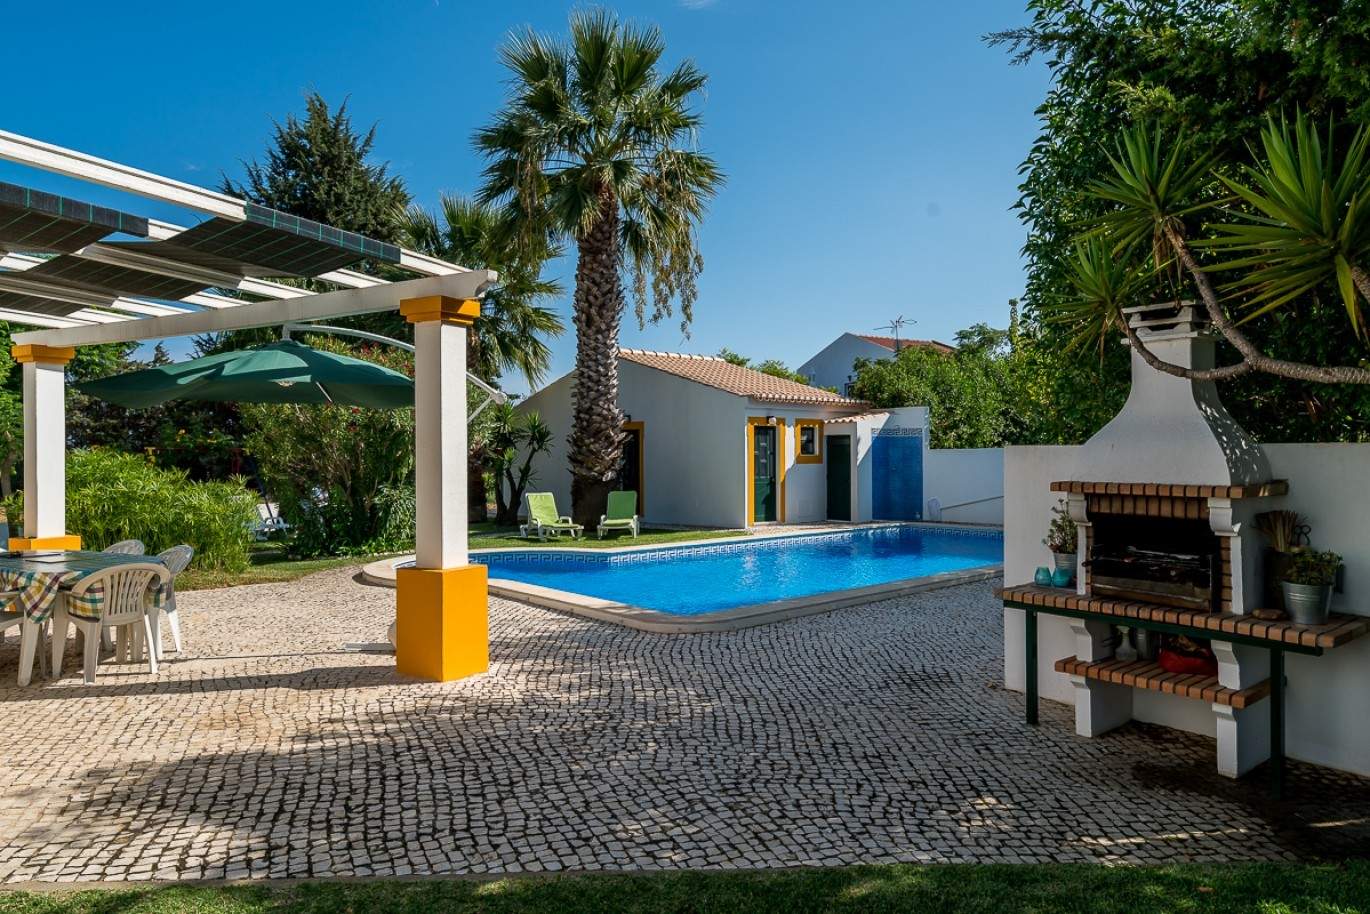 Venda de moradia com piscina em Vila Real de Santo António, Algarve_86512